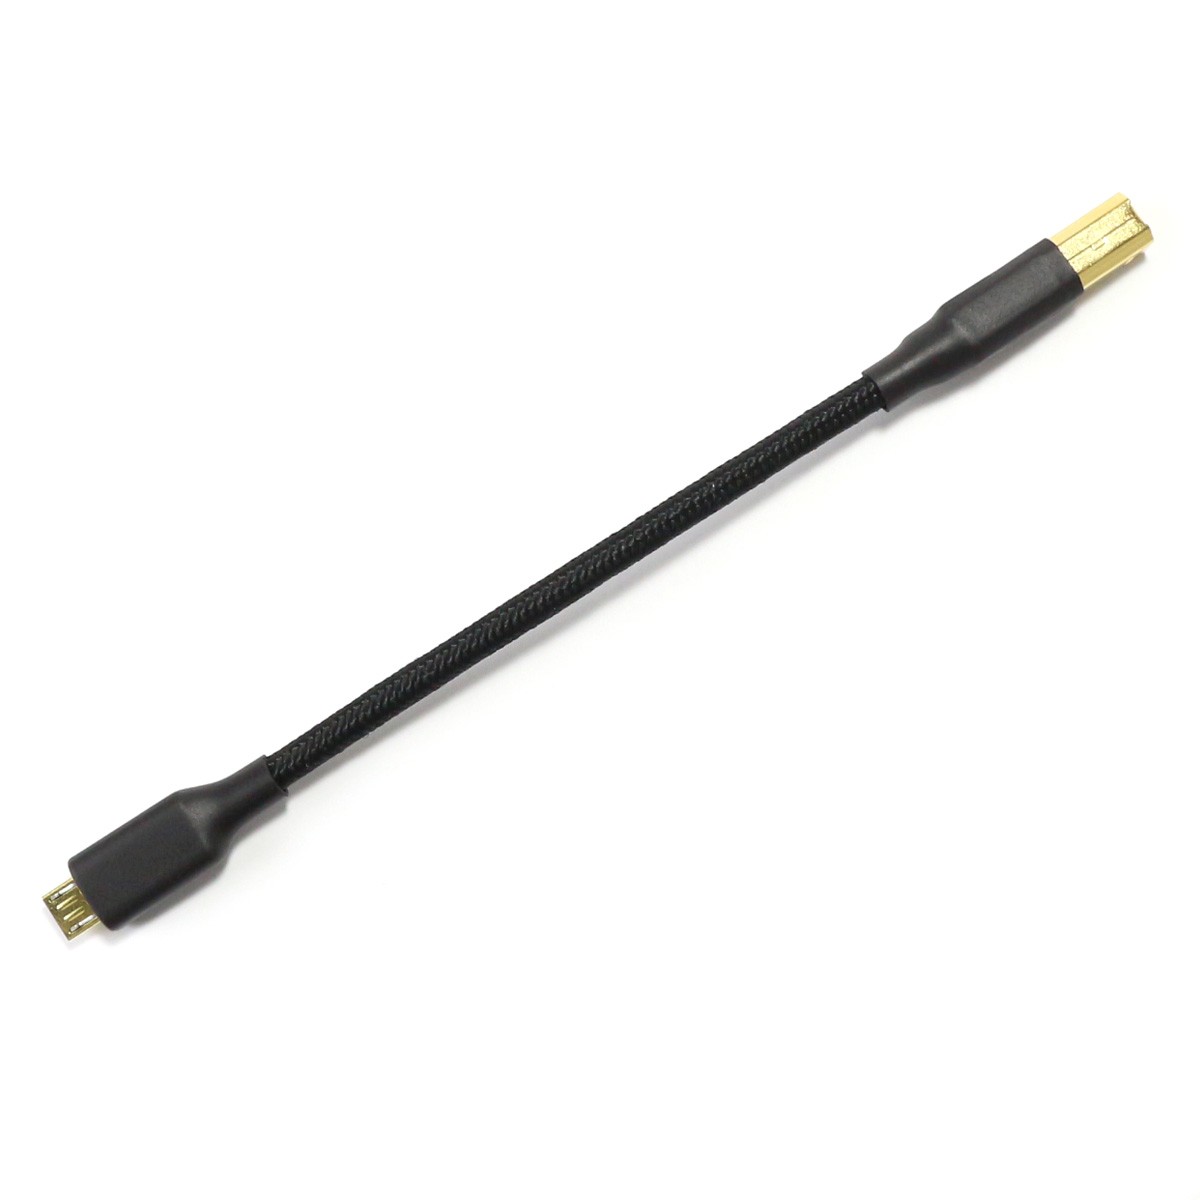 Cable Usb A Femelle vers micro usb OTG Male+Femelle 19cm